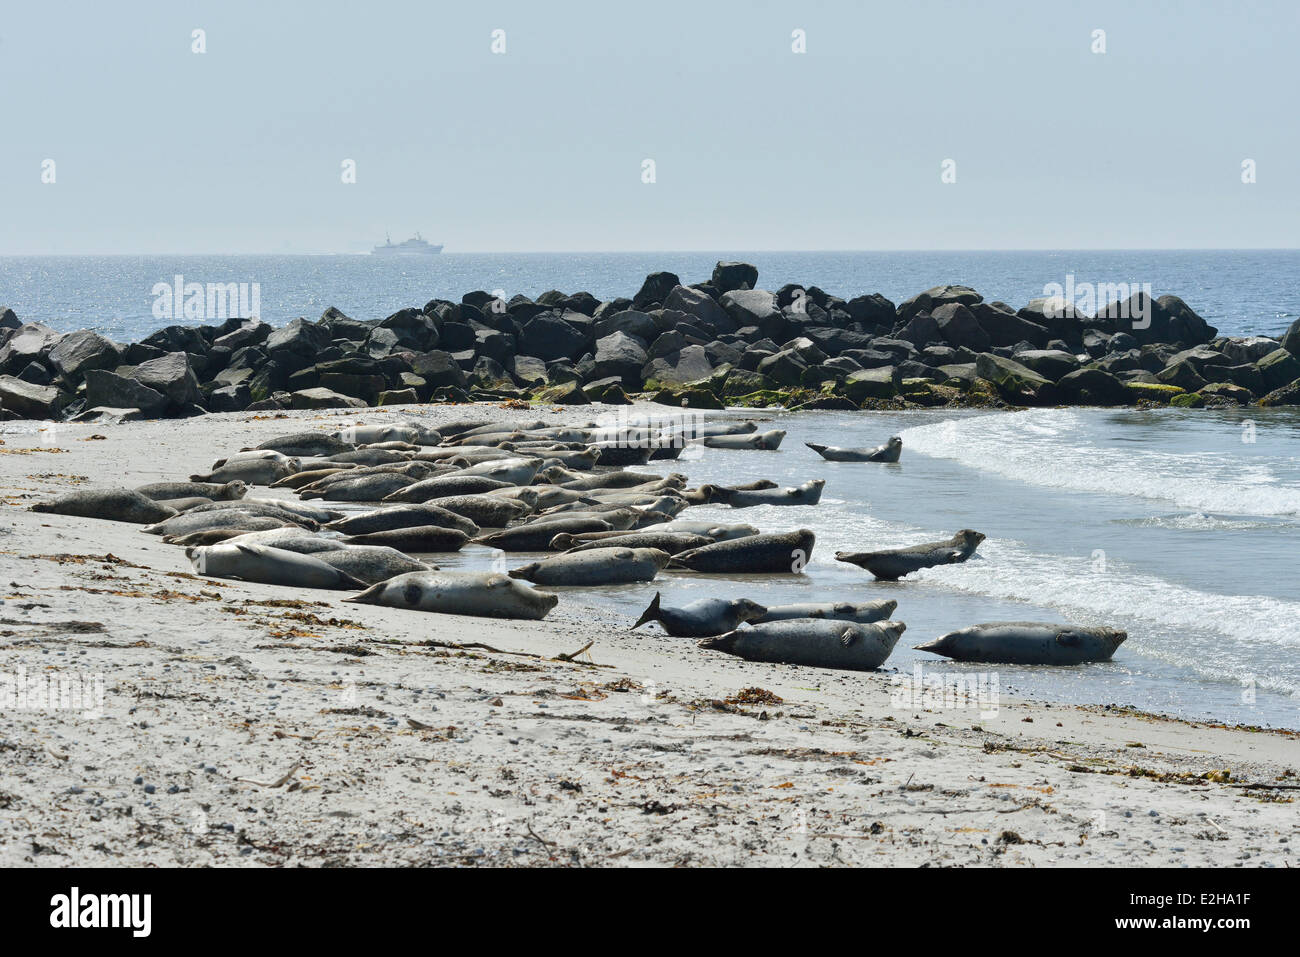 Les phoques communs et les Phoques communs (Phoca vitulina) sur la plage, l'île de Helgoland, Schleswig-Holstein, Allemagne Banque D'Images